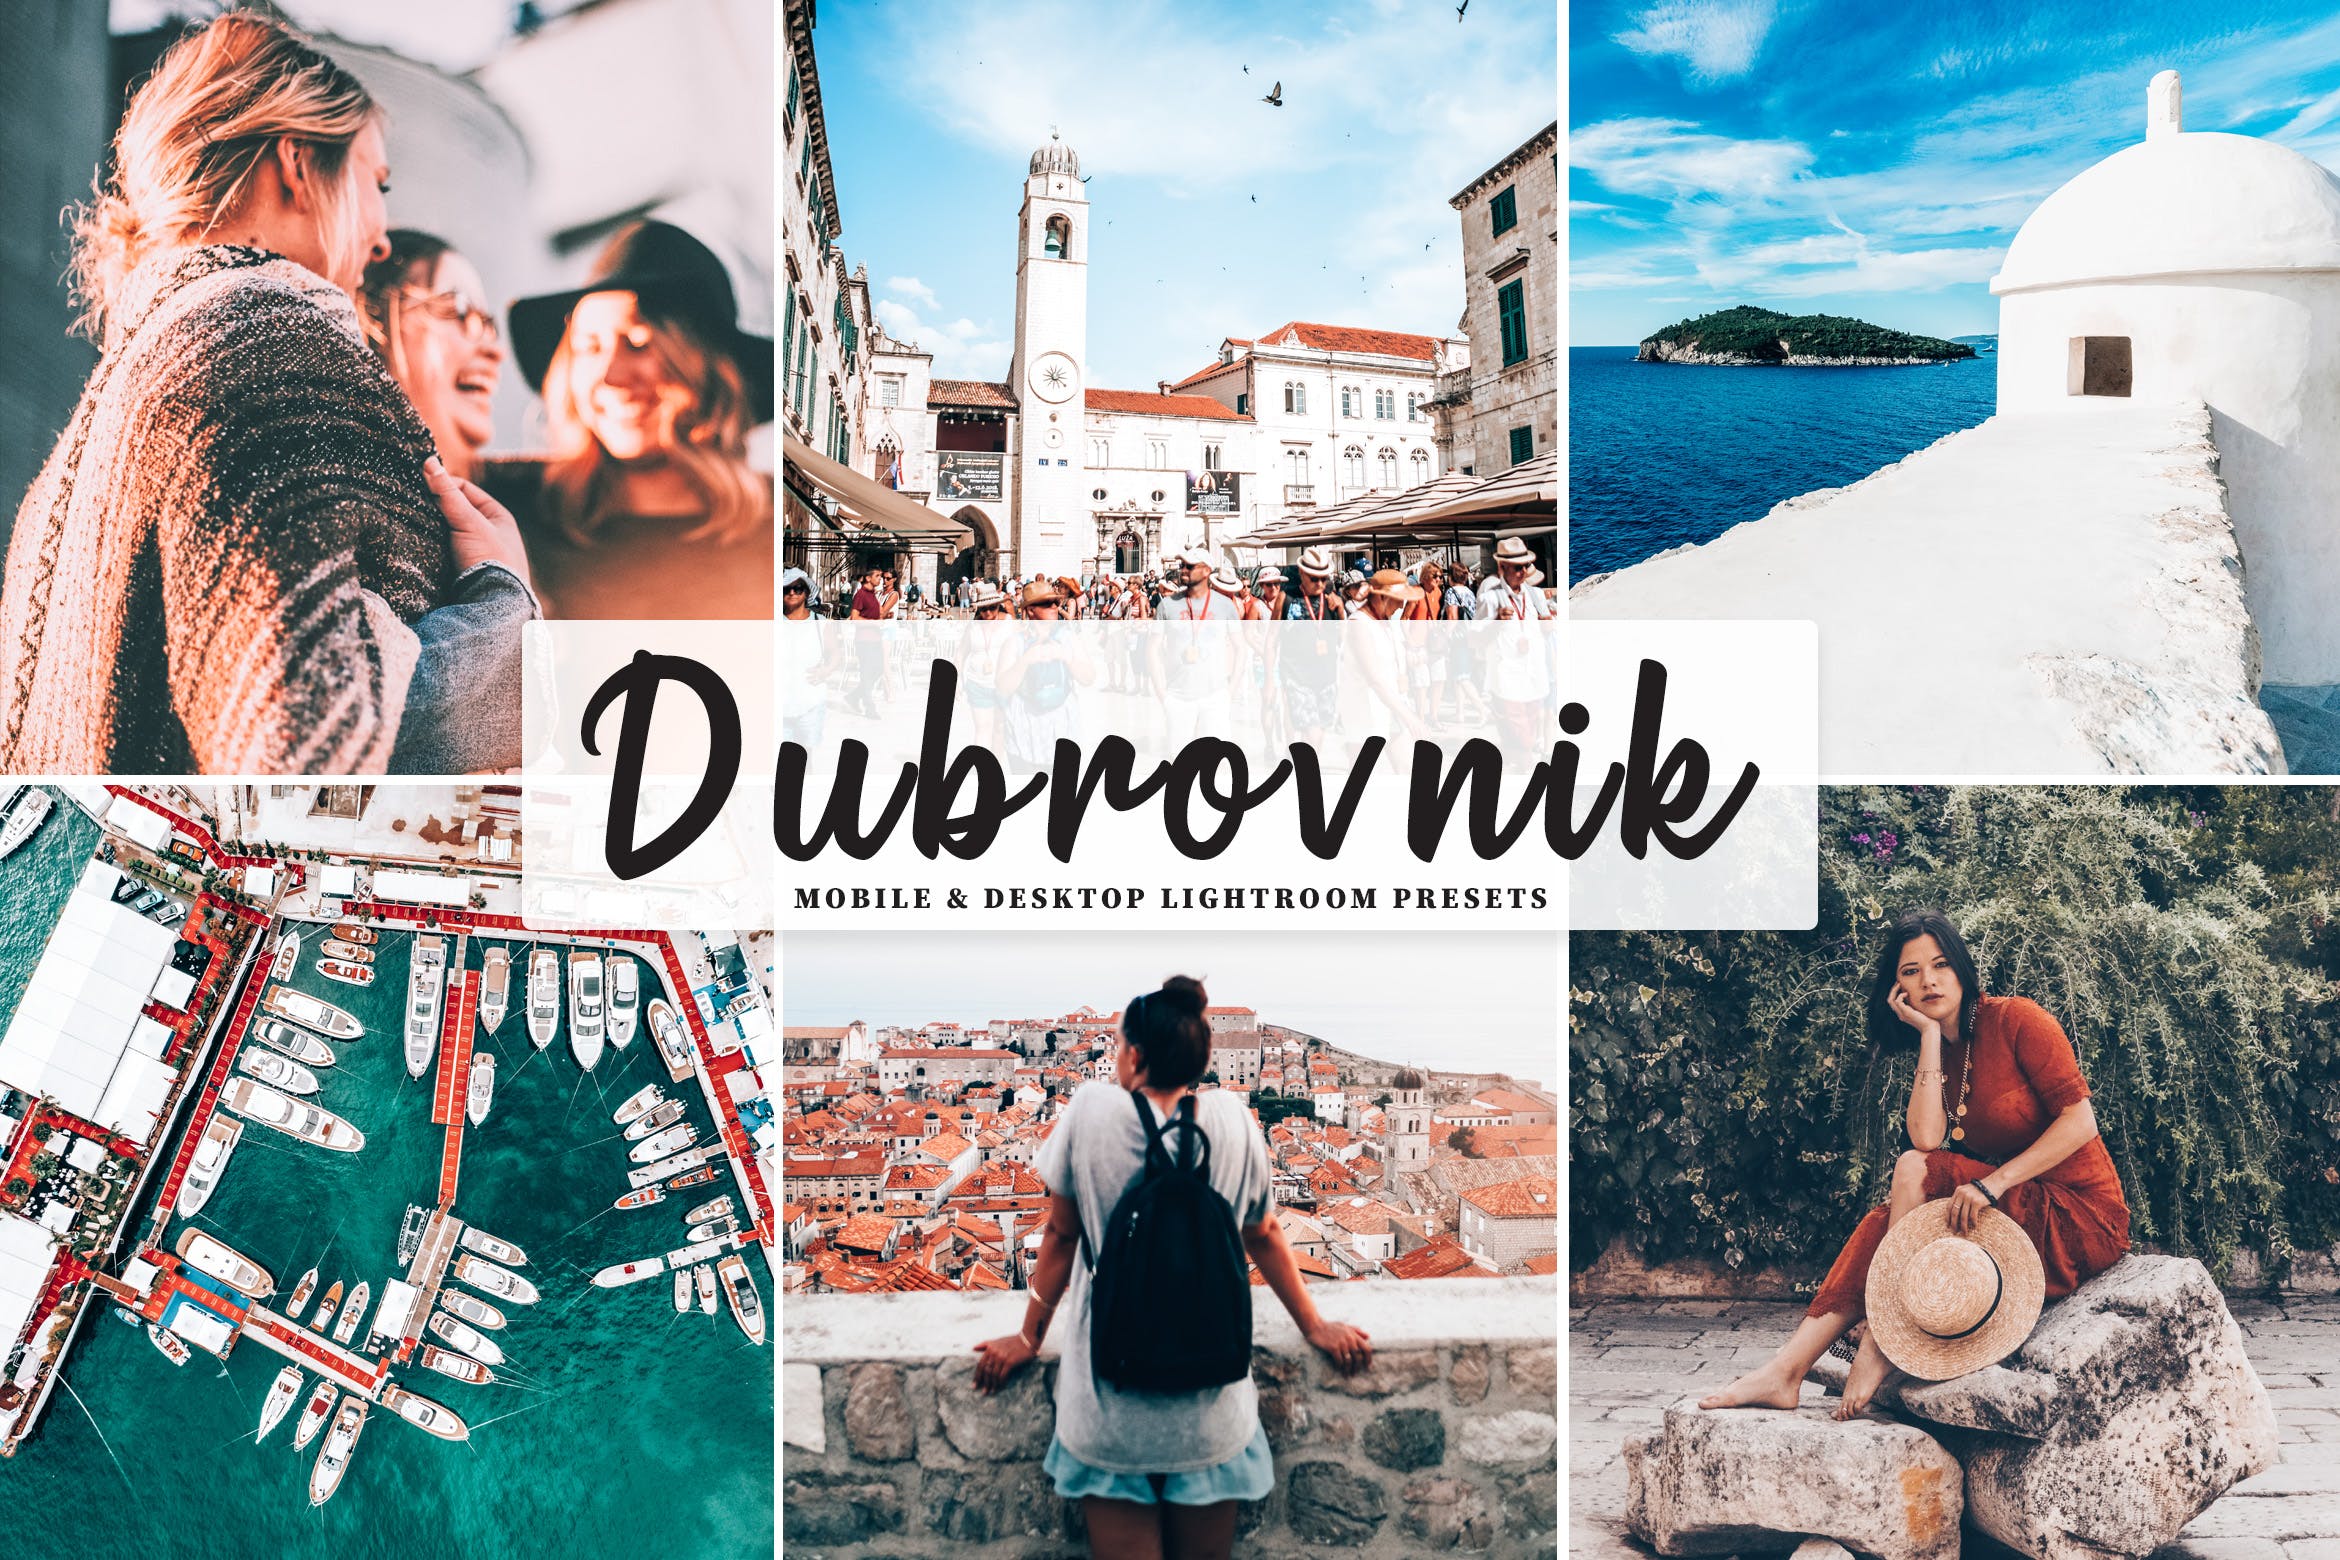 摄影爱好者必备的旅行照片调色处理大洋岛精选LR预设 Dubrovnik Mobile & Desktop Lightroom Presets插图